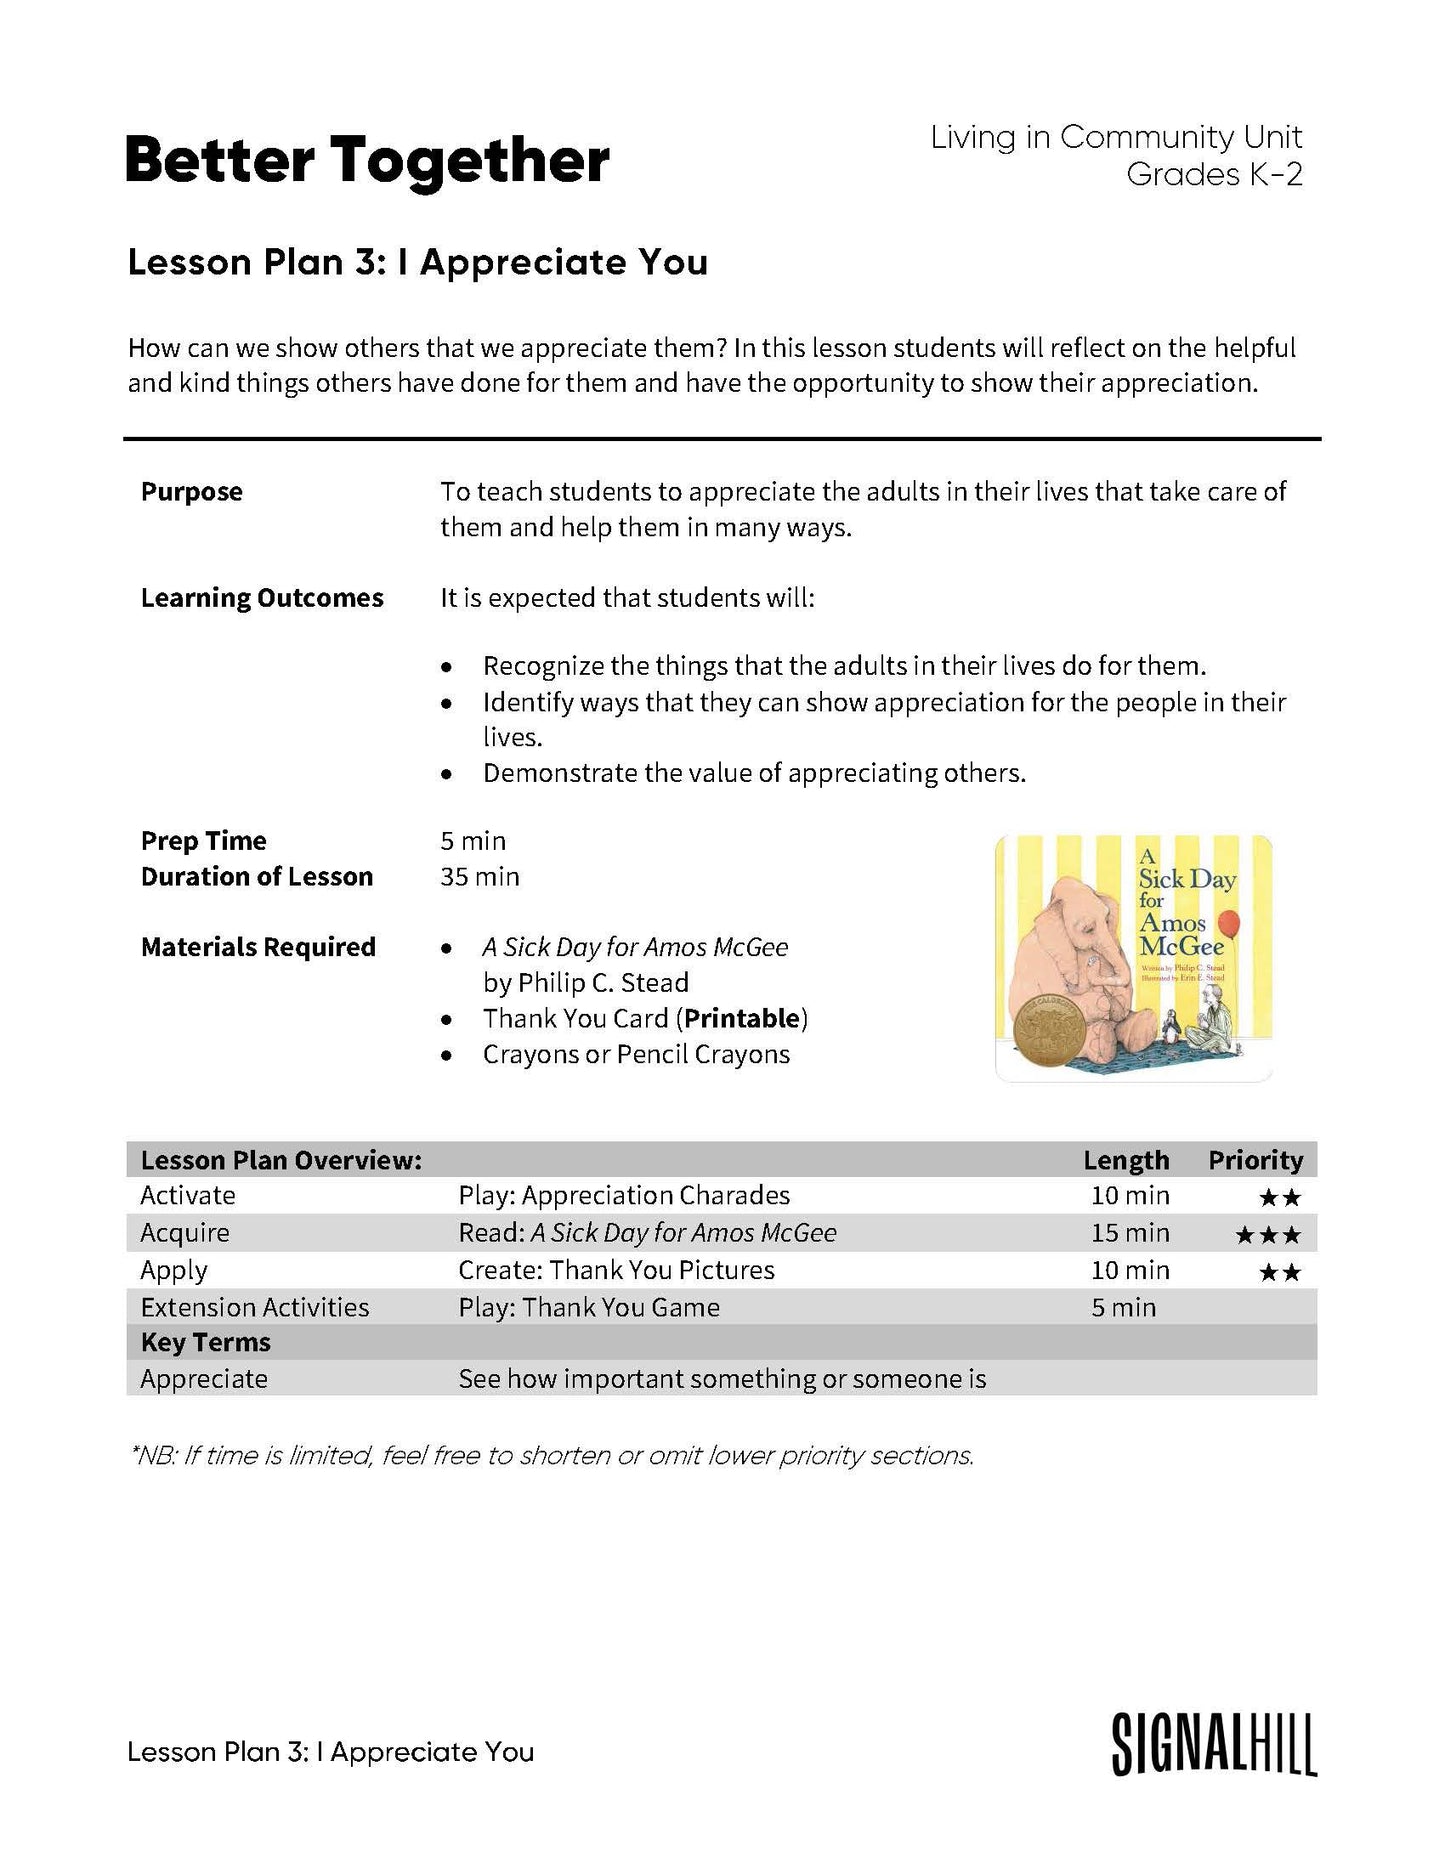 Lesson Plan 3: I Appreciate You